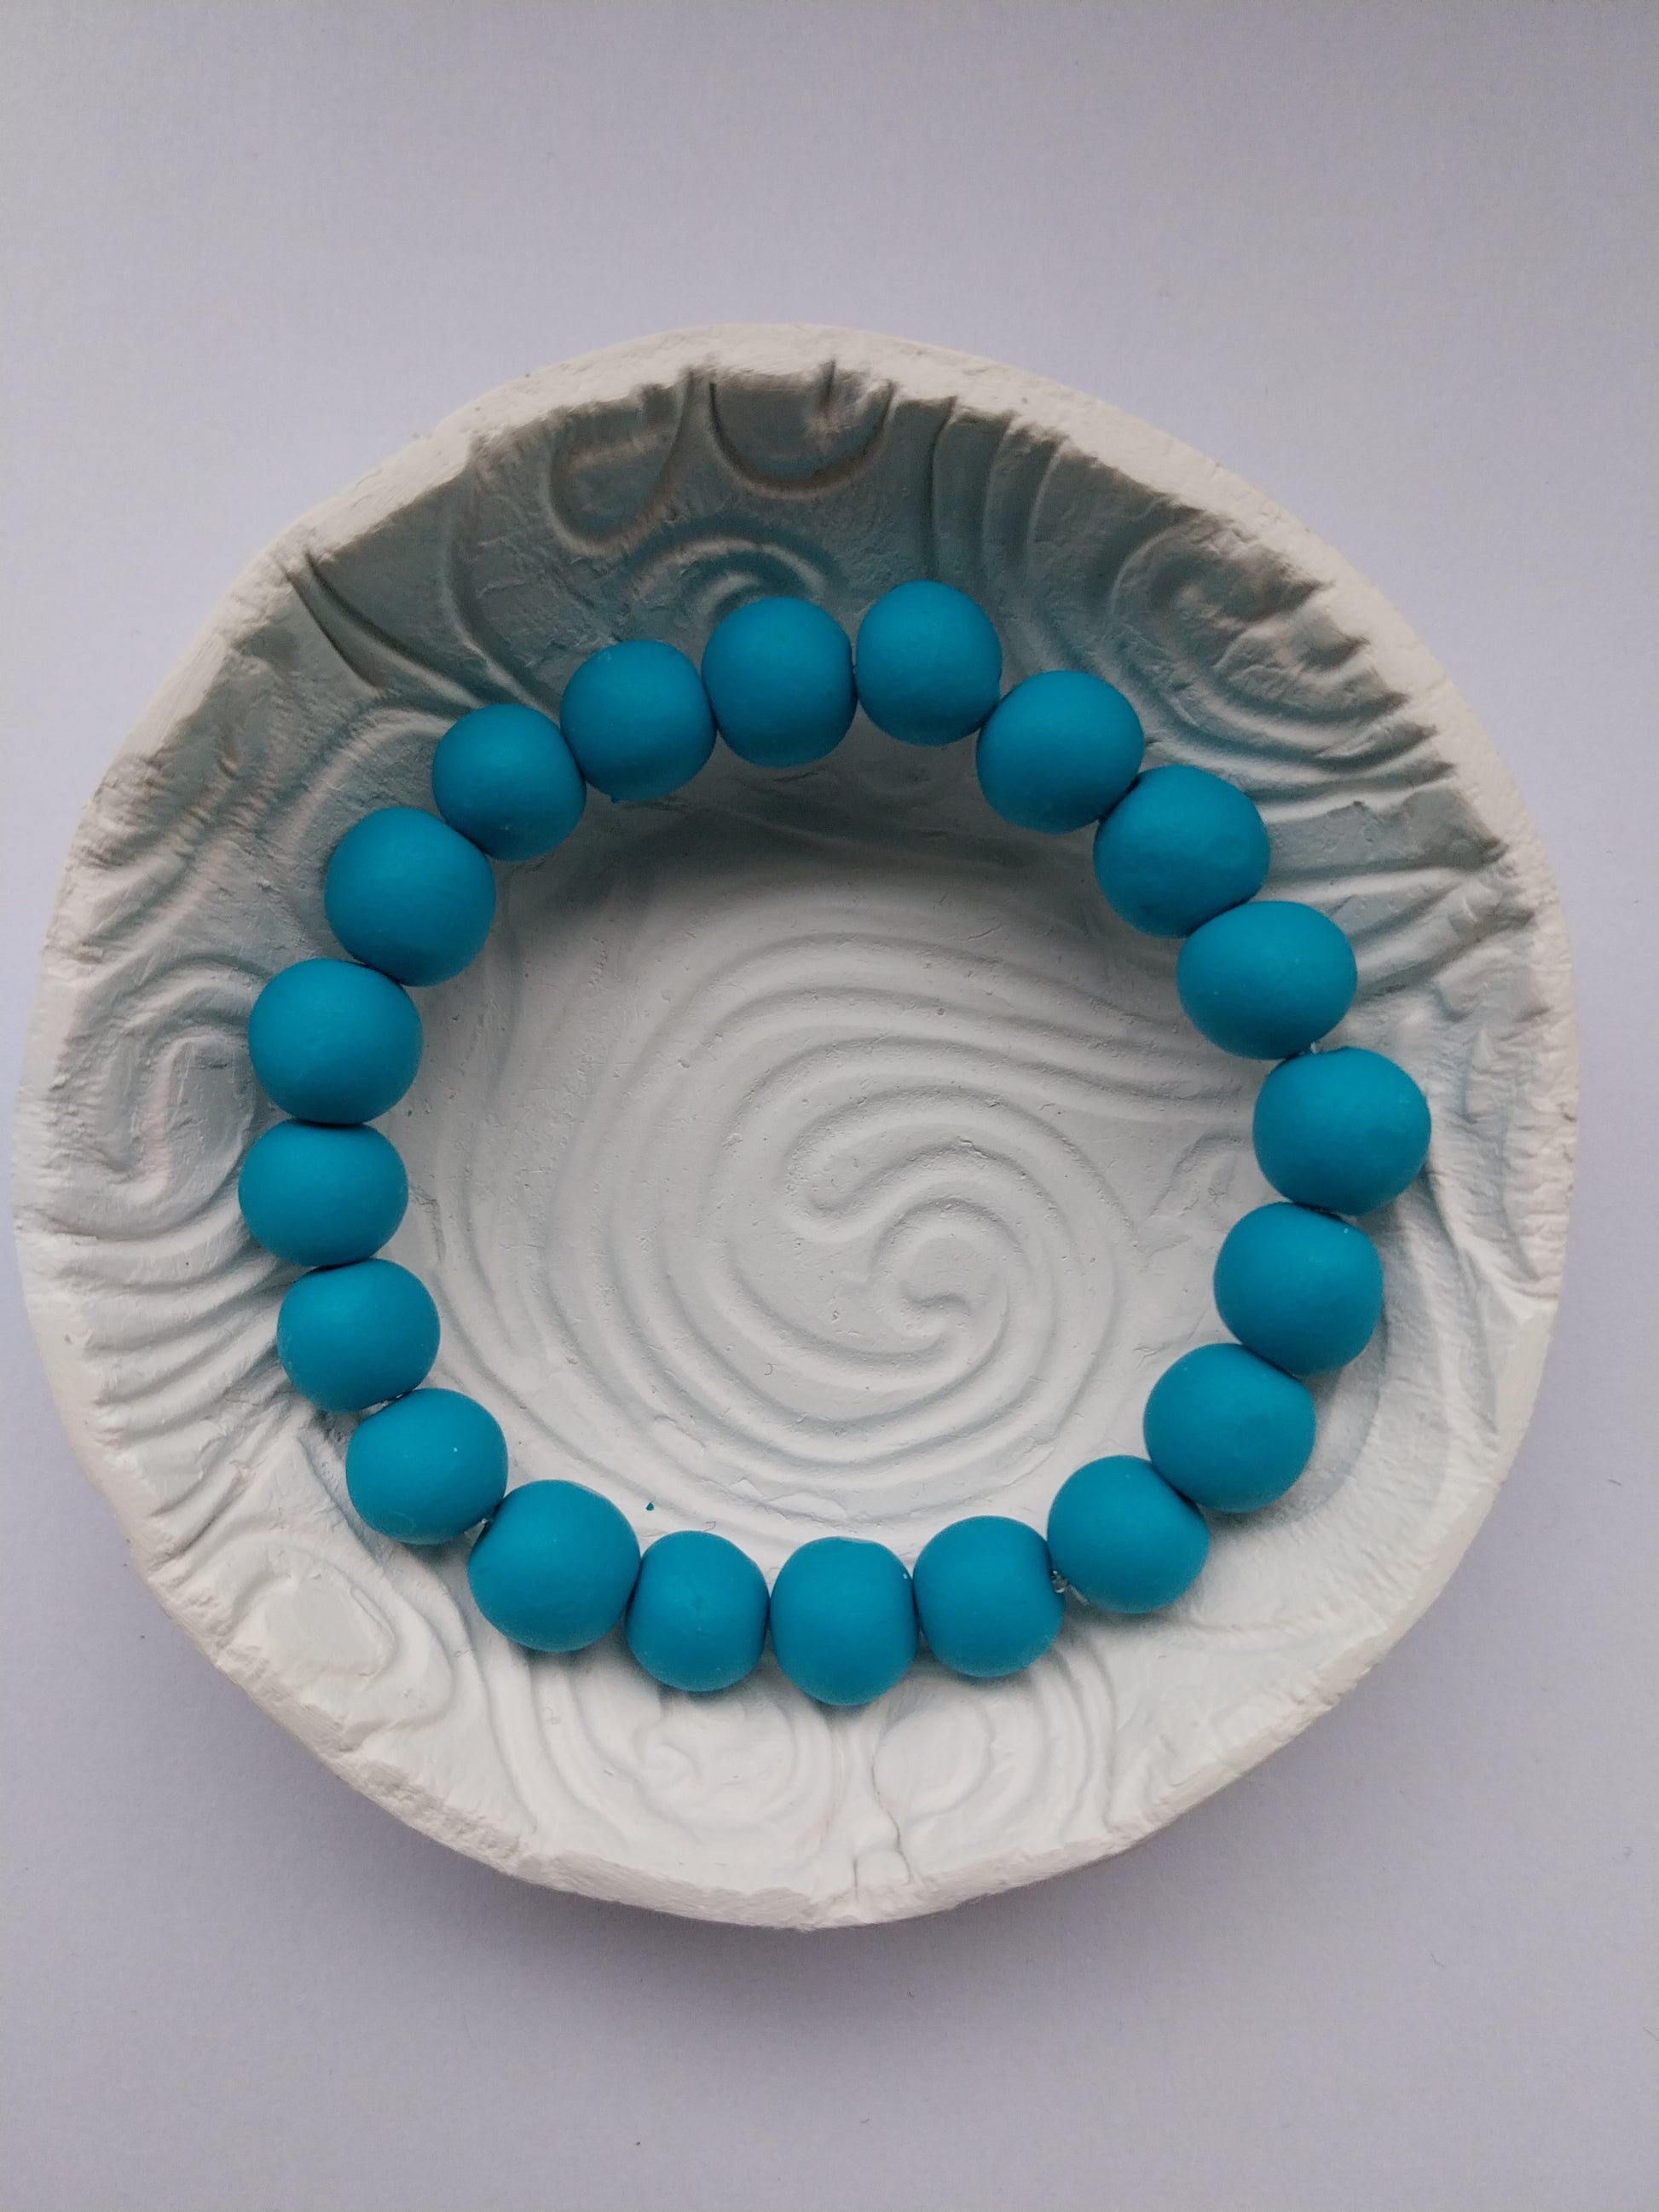 Ceramic unisex bead bracelet in turquoise